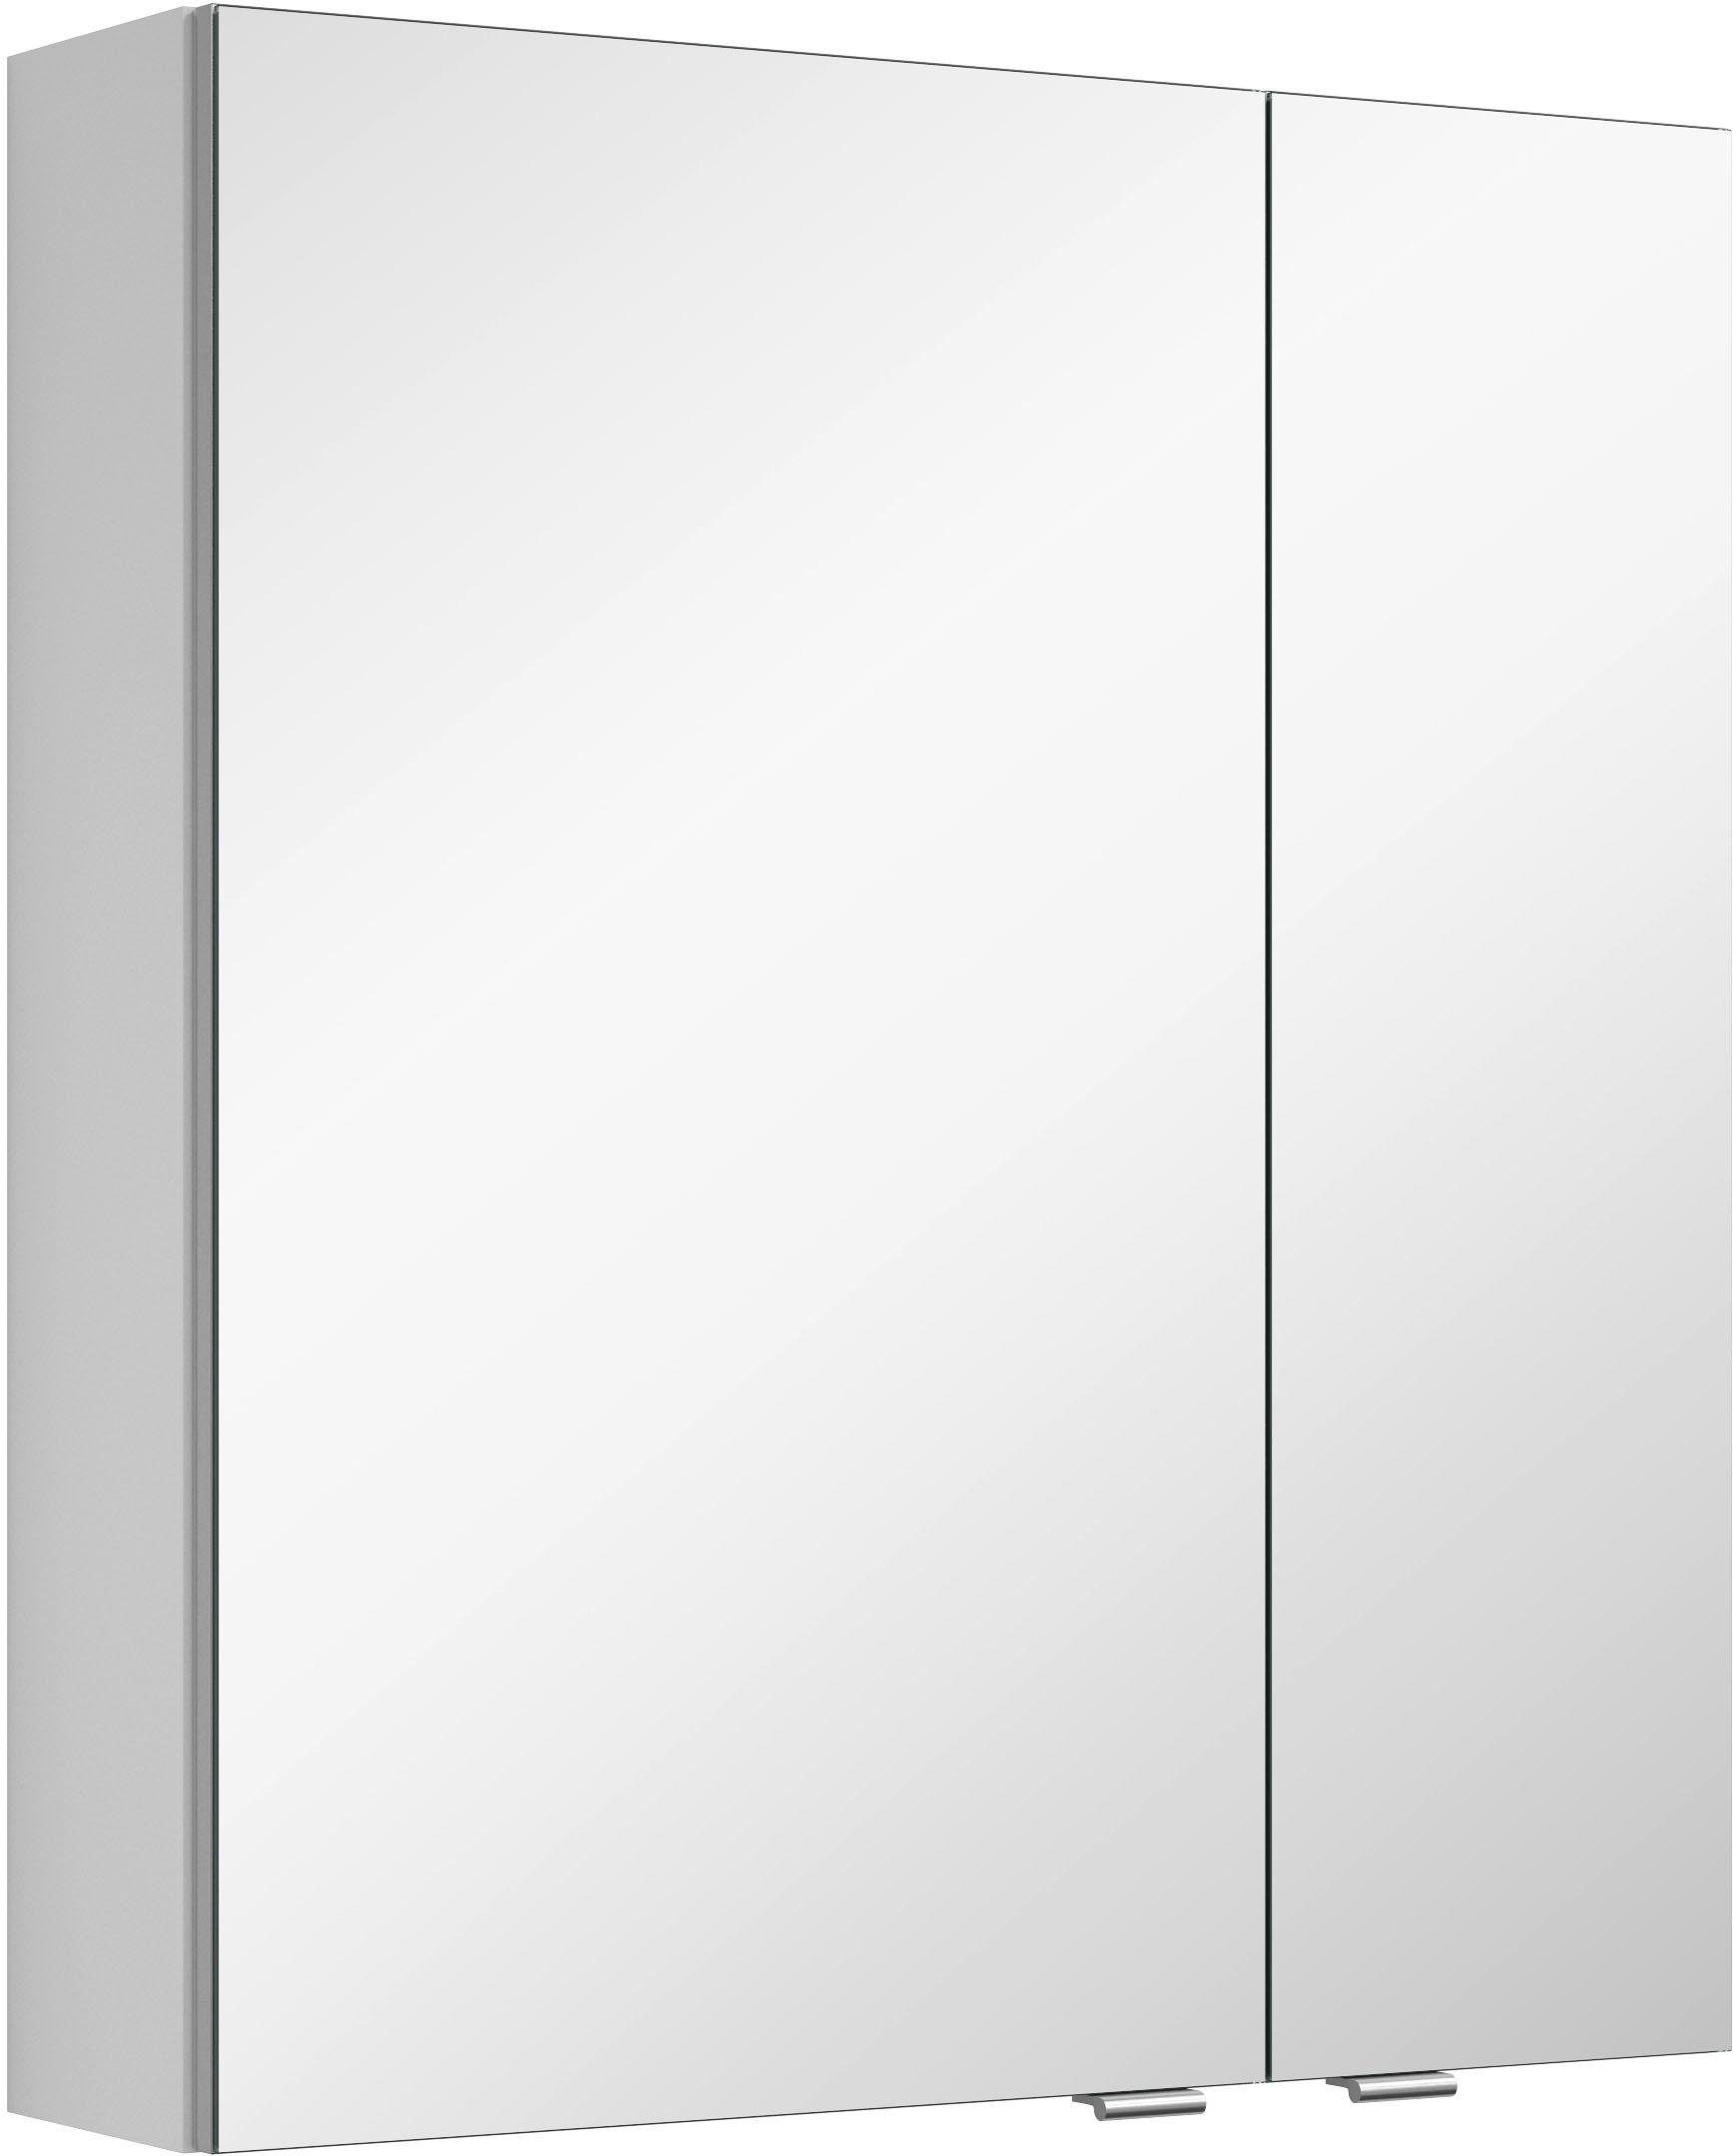 MARLIN 60/17,6/68,2 cm doppelseitig 3980 Maße (B/T/H): Türen, vormontiert, verspiegelten mit Spiegelschrank